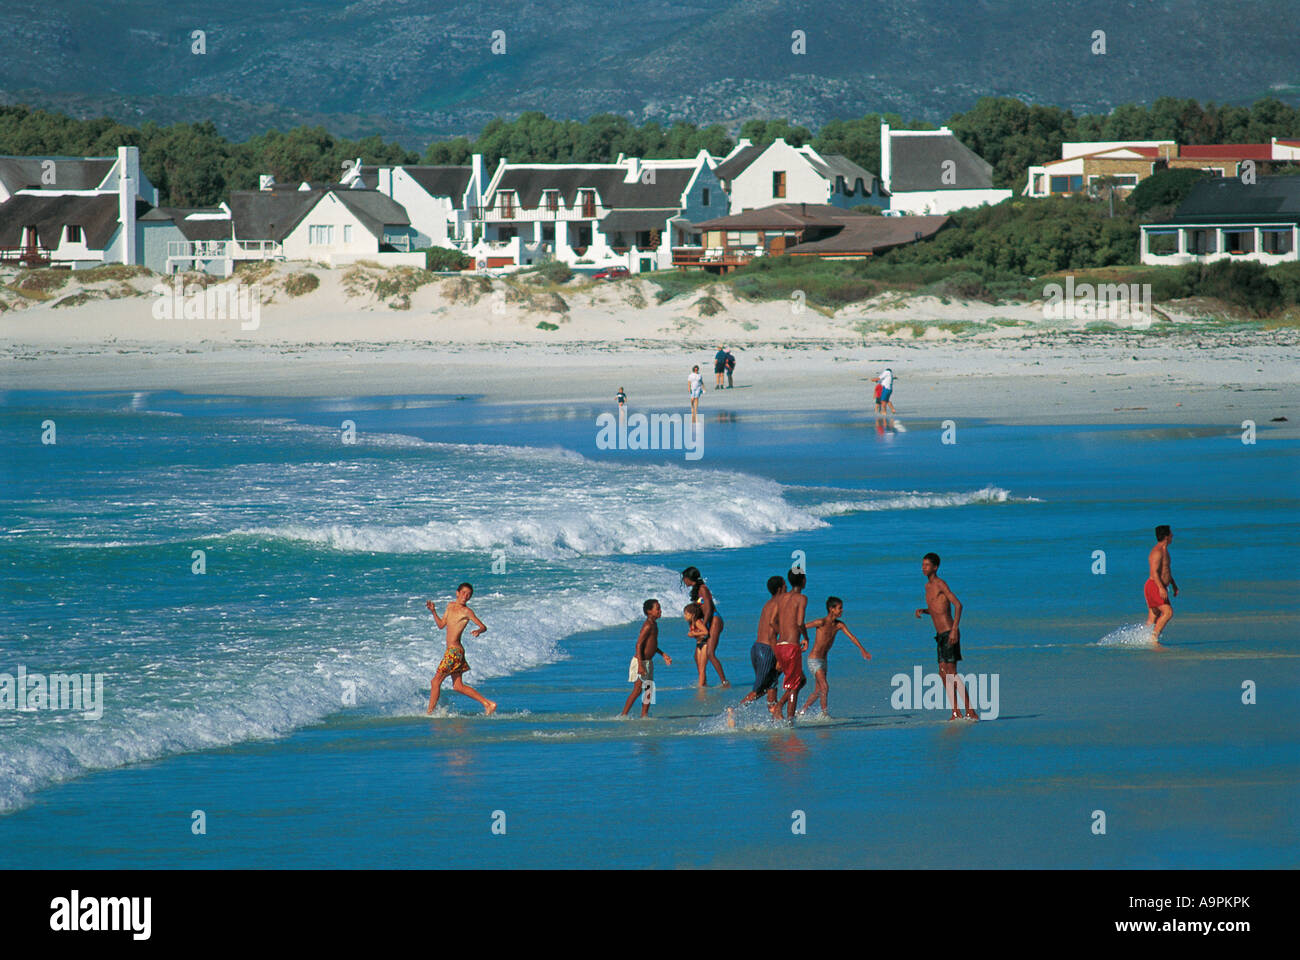 Las razas mixtas disfrutan de la diversión en la playa Kommetjie Cape Town South Africa Foto de stock